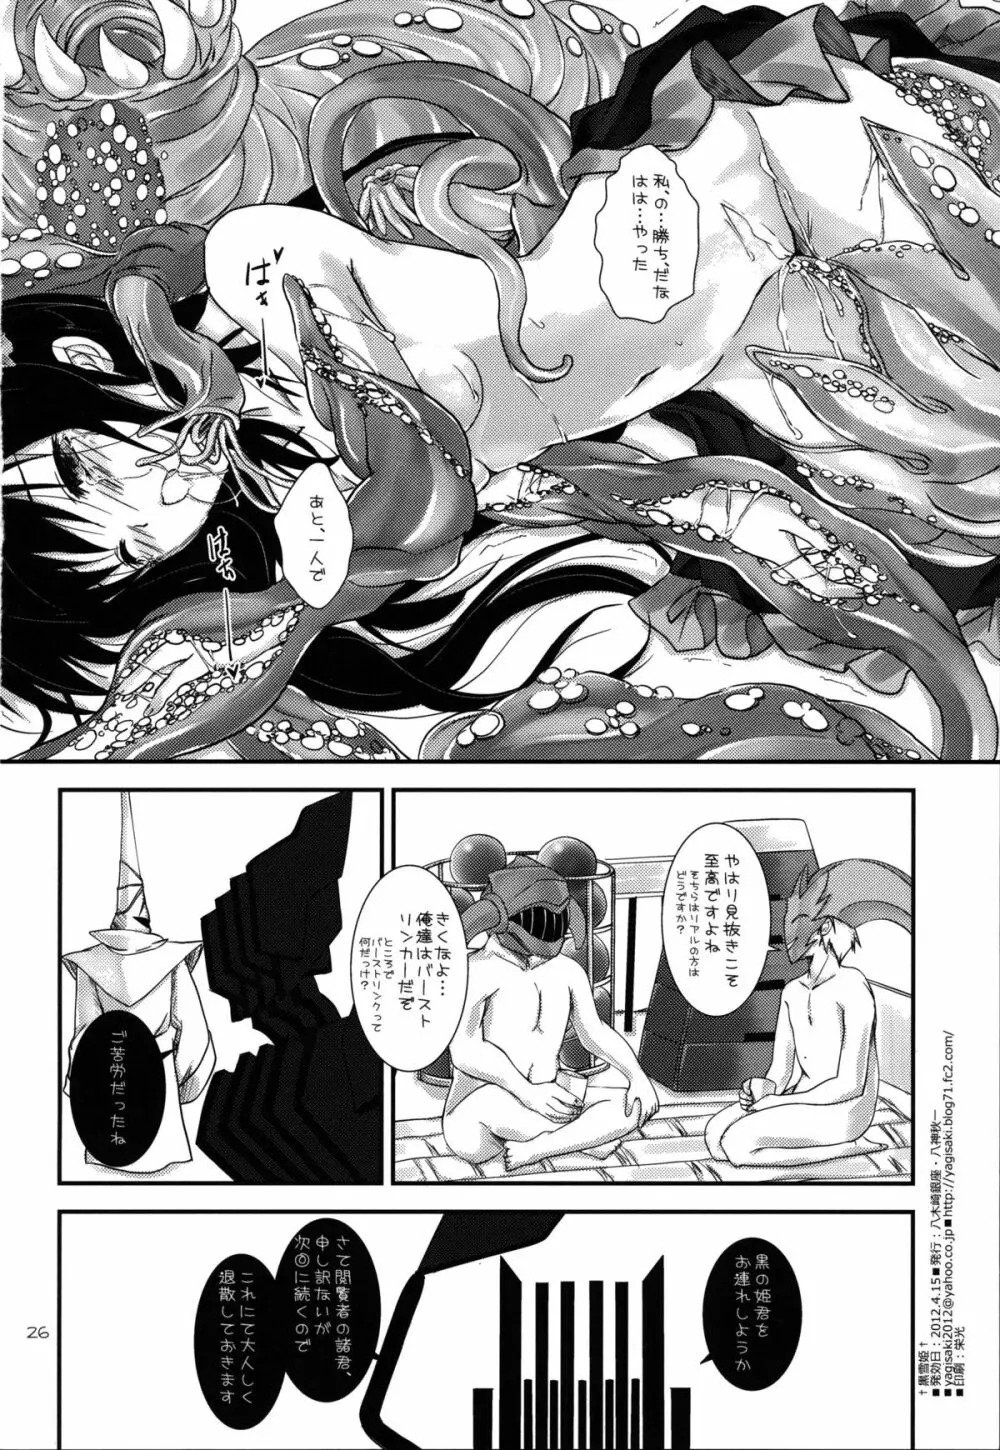 †黒雪姫† - page26